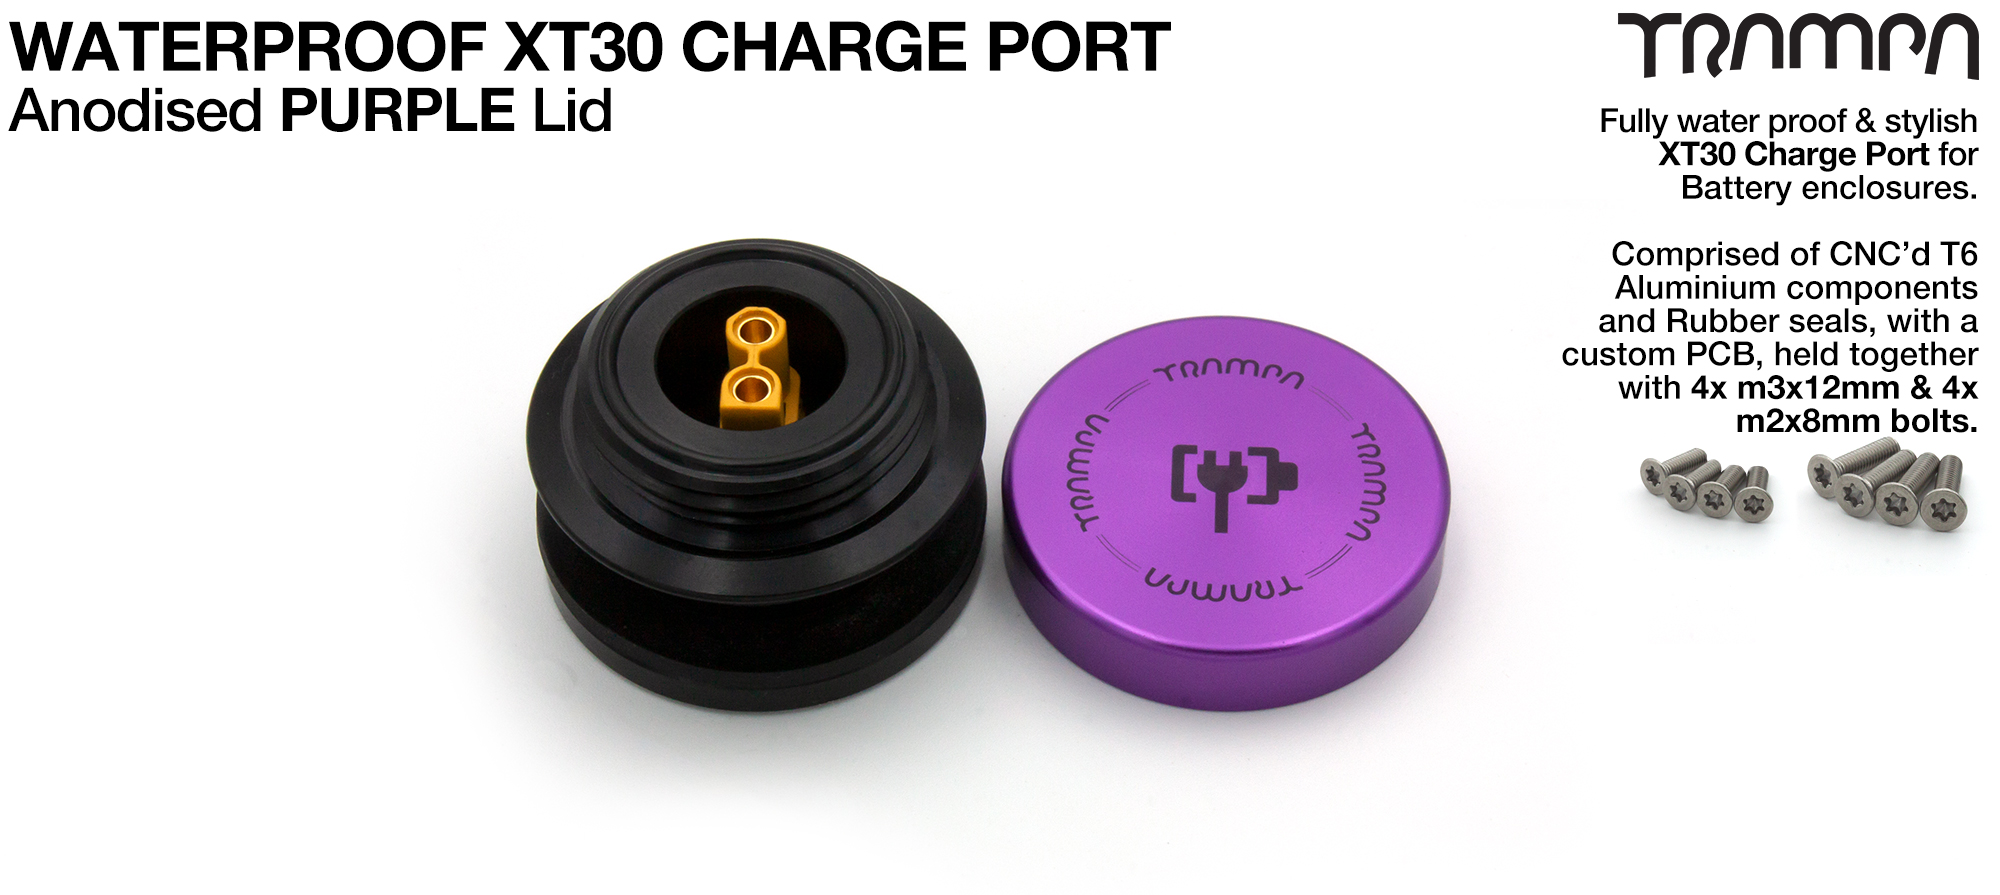 ORRSOM GT XT30 WATERPROOF Charge Port - PURPLE